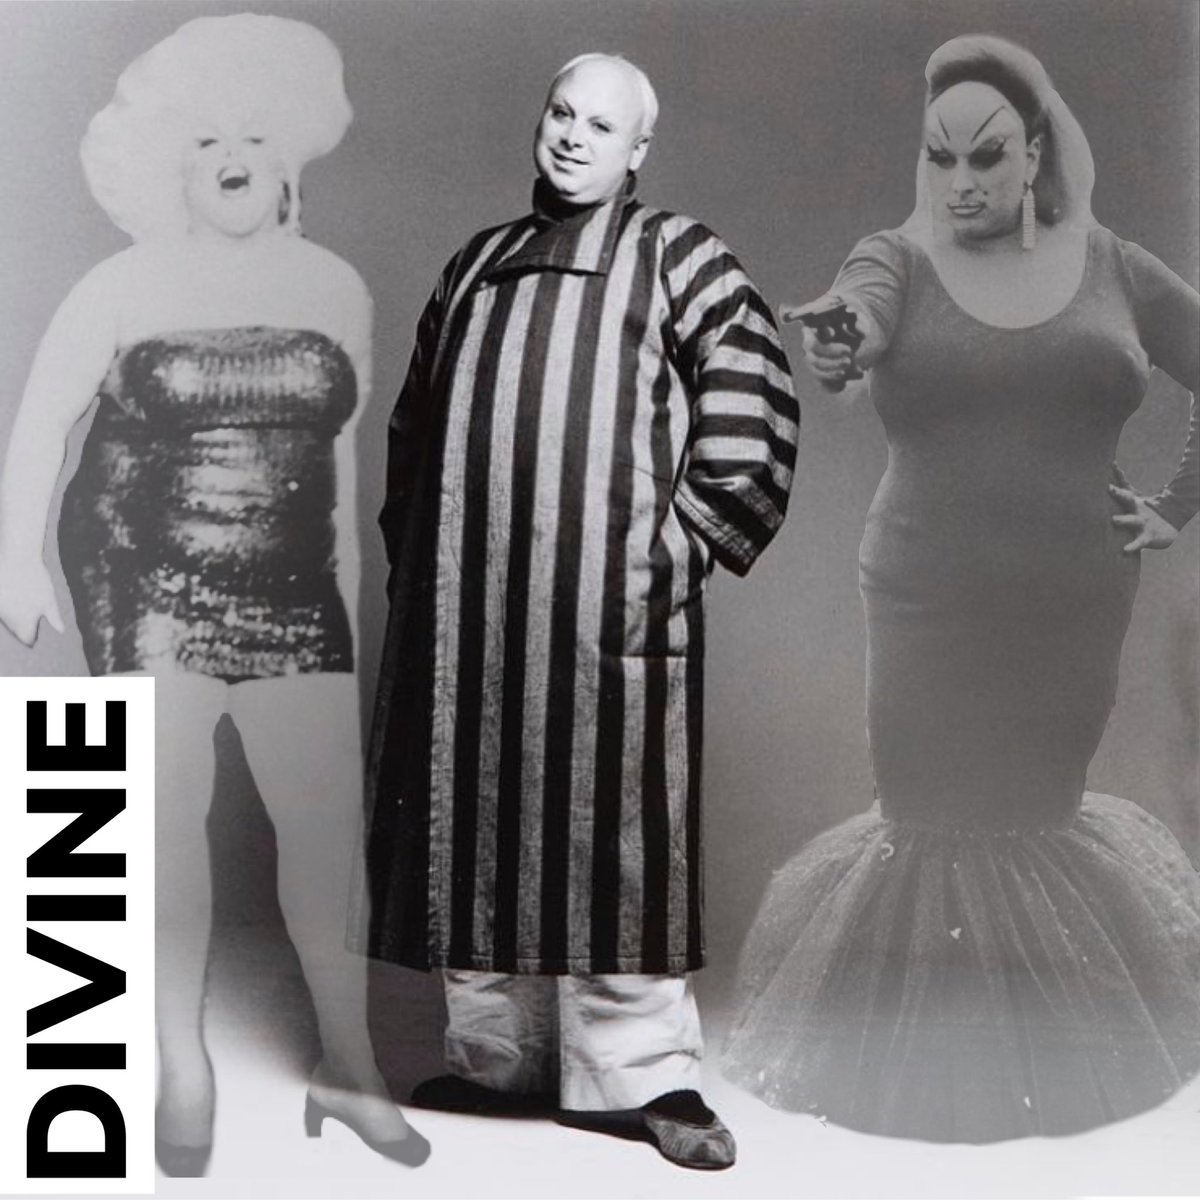 DIVINE #divine #harrisglennmilstead #drag #icon #legend #actor #johnwaters ...